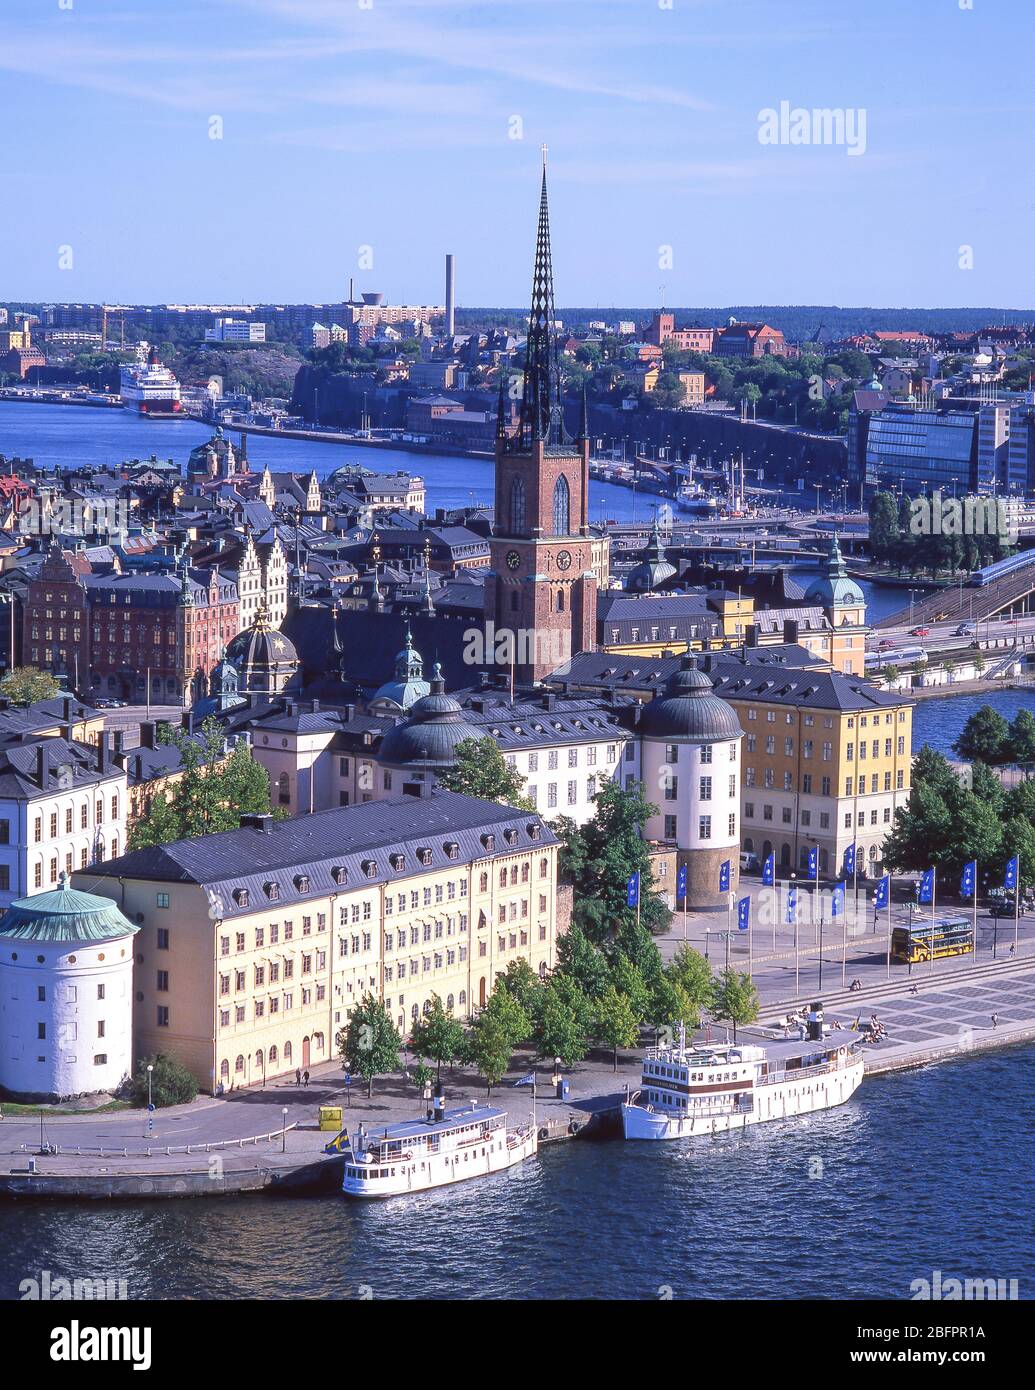 Vue aérienne de Gamla Stan (vieille ville) depuis l'hôtel de ville, Stadsholmen, Stockholm, Royaume de Suède Banque D'Images